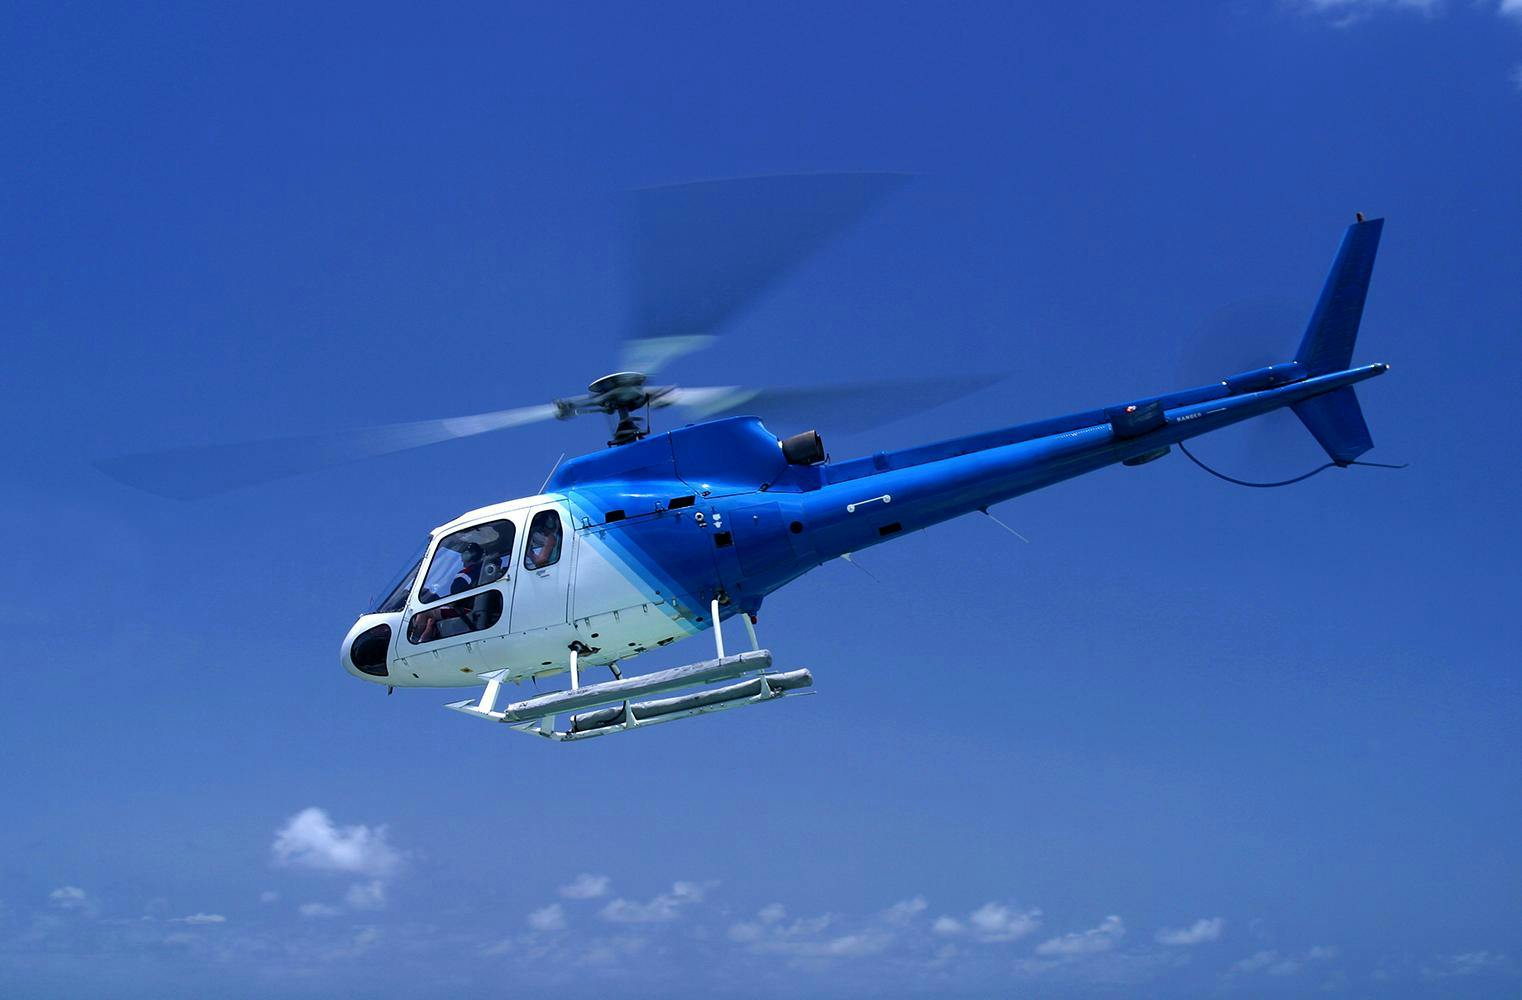 Romantischer Rundflug | Helikopter exklusiv für 2 | 45 Min.